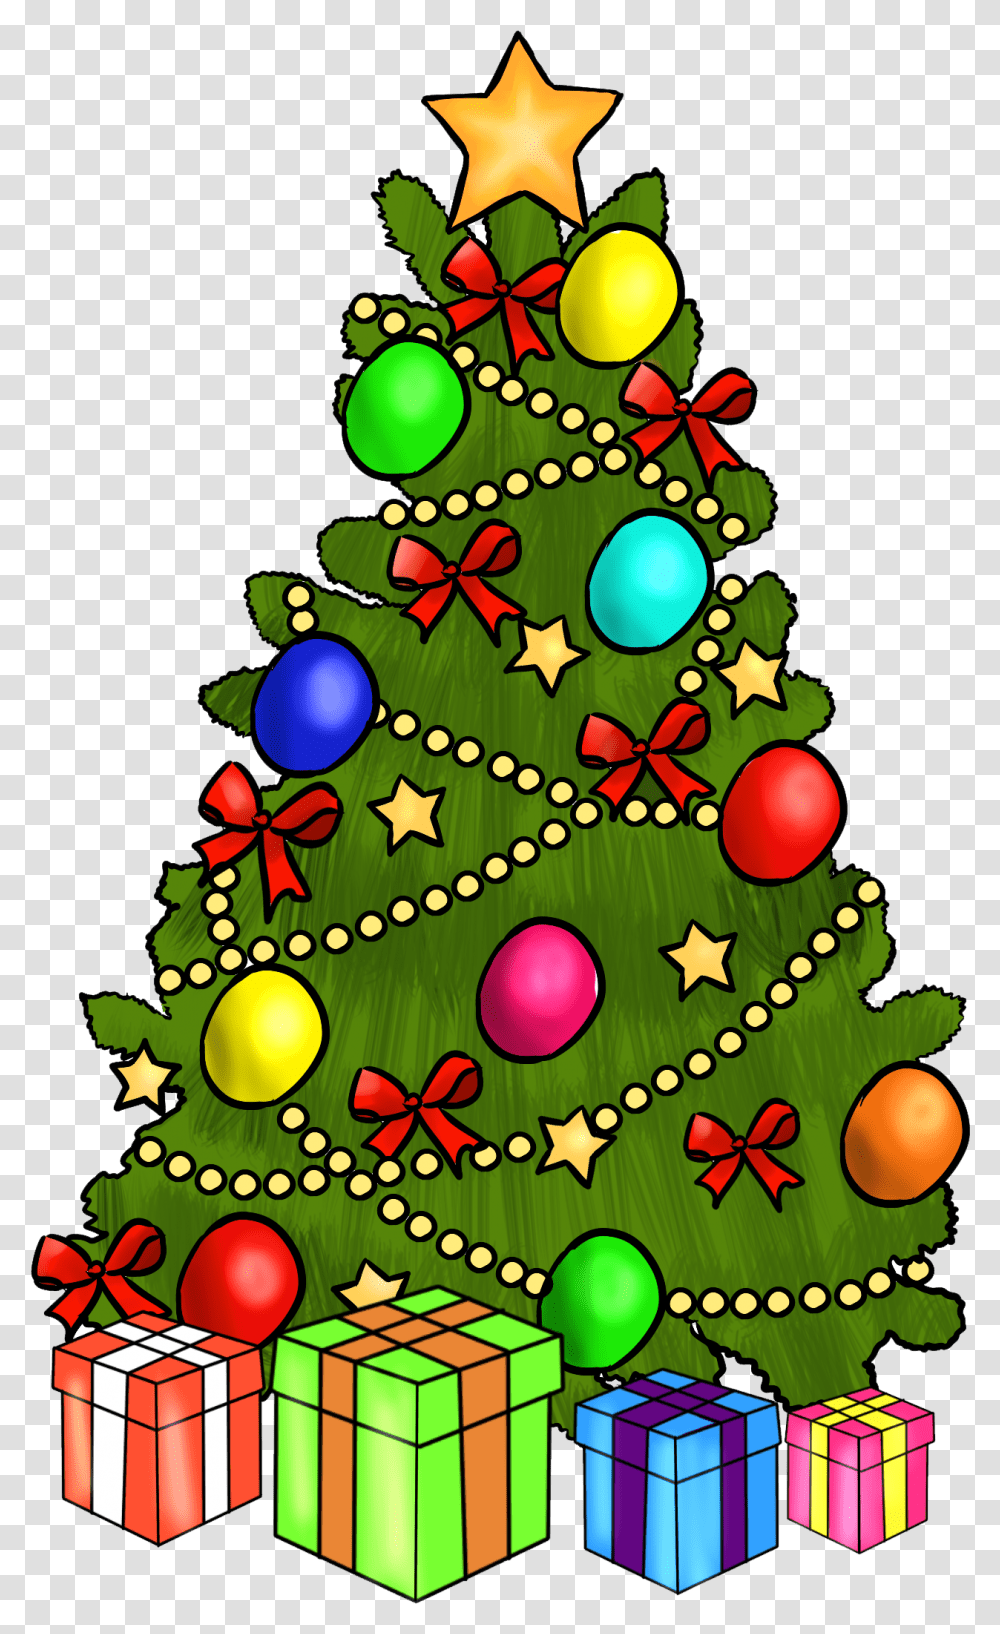 Best Christmas Clip Art Images Clip Art Christmas Images Free, Tree, Plant, Ornament, Christmas Tree Transparent Png